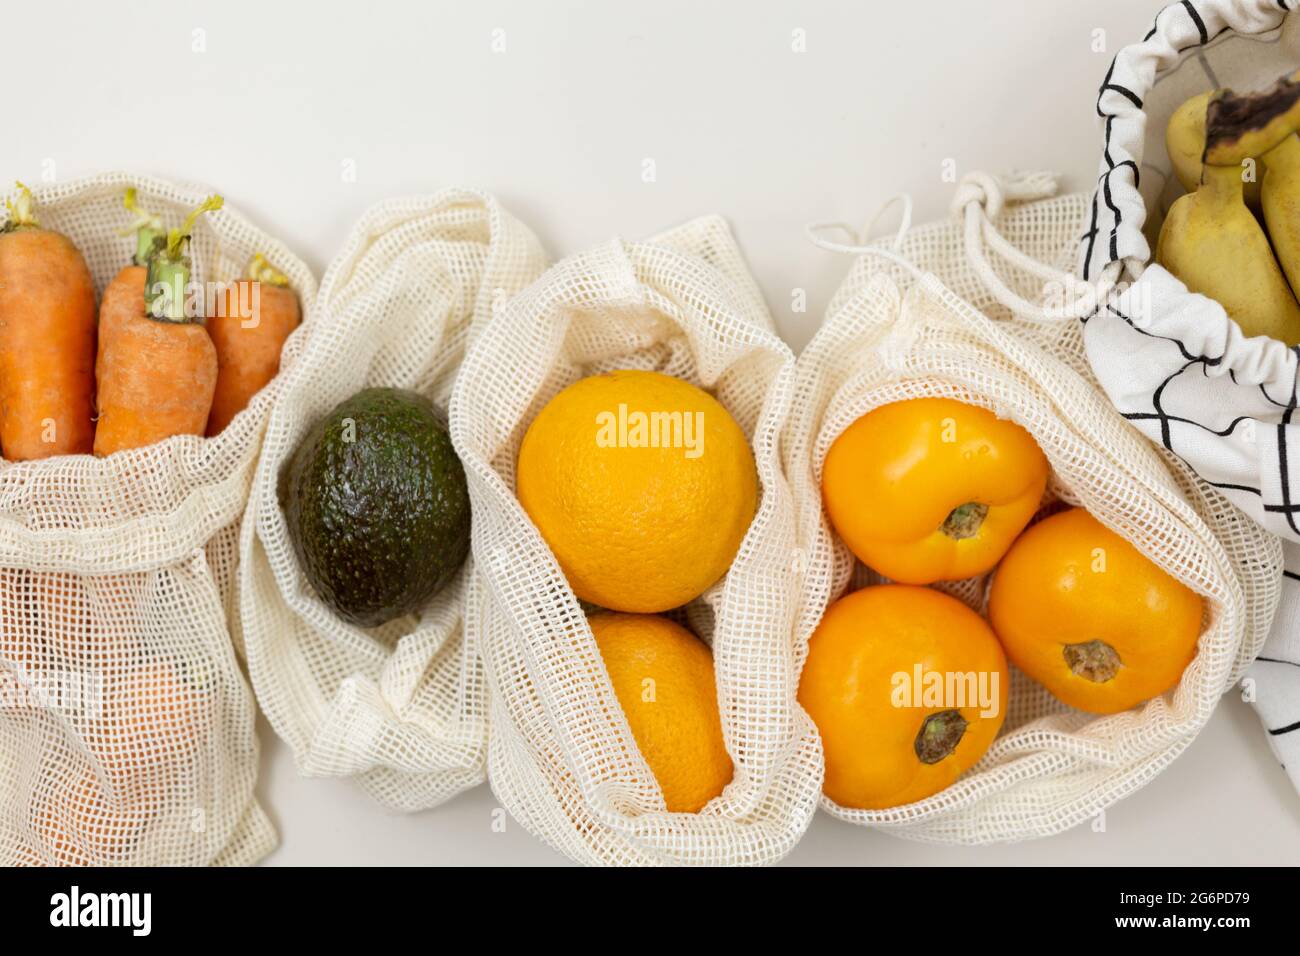 Frisches Obst, Gemüse in Öko-Baumwollbeuteln auf einem beigen Tisch. Karotten, Orangen, Bananen, Avocado vom Markt. Zero Waste Shopping-Konzept. Stockfoto